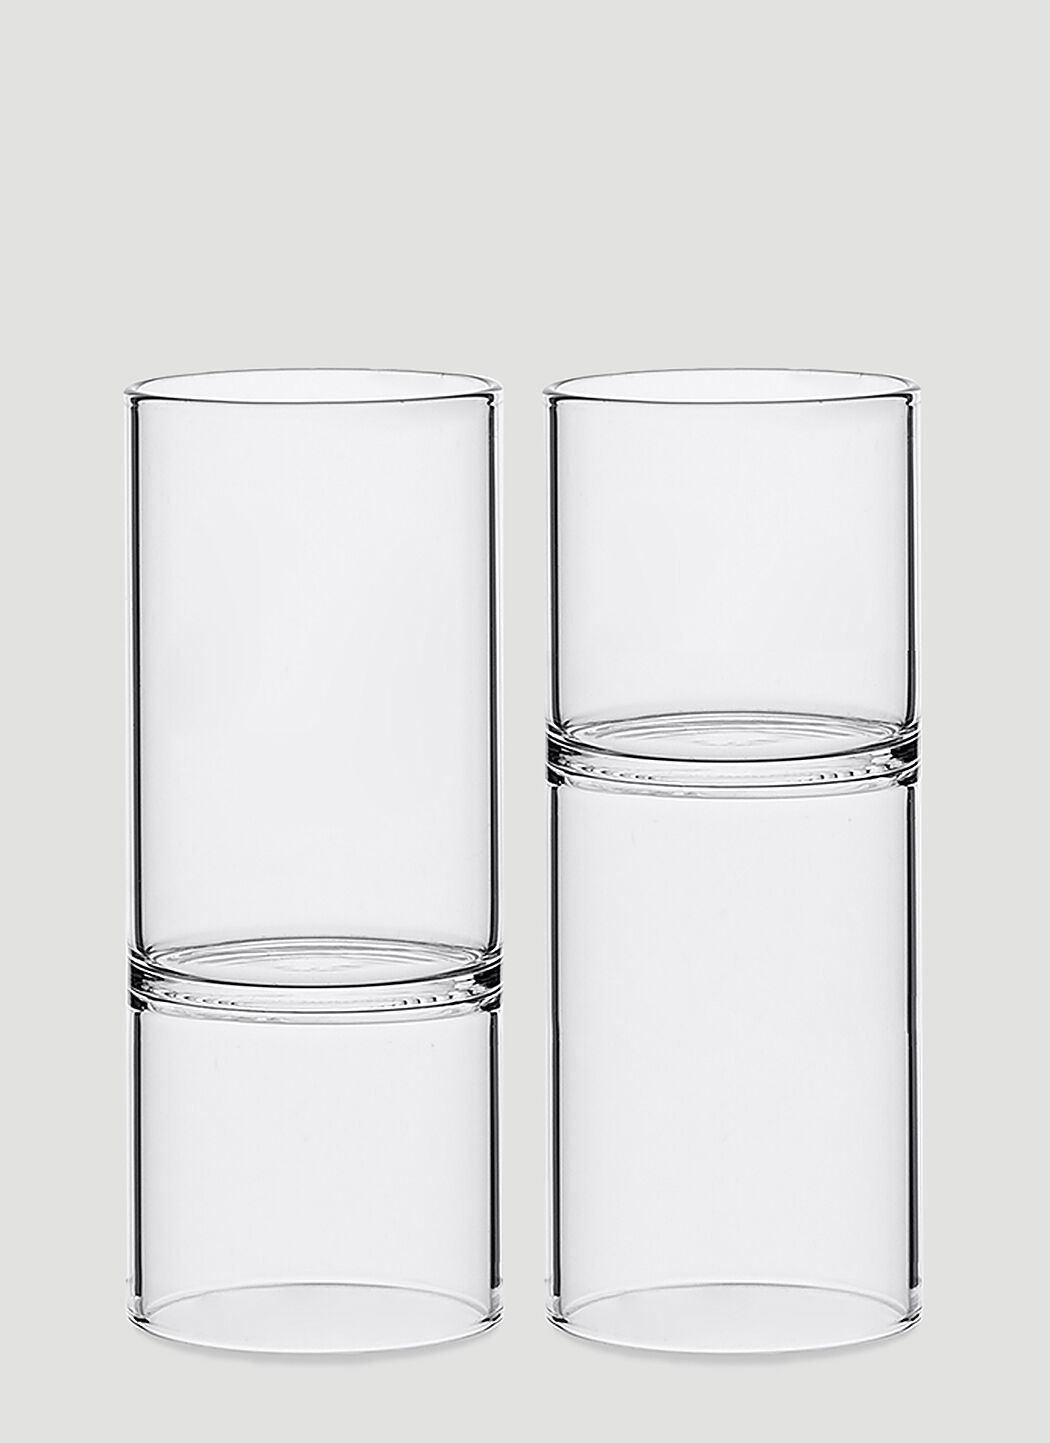 Fferrone Design Set Of Two Revolution Liqueur And Espresso Glass Transparent wps0644556